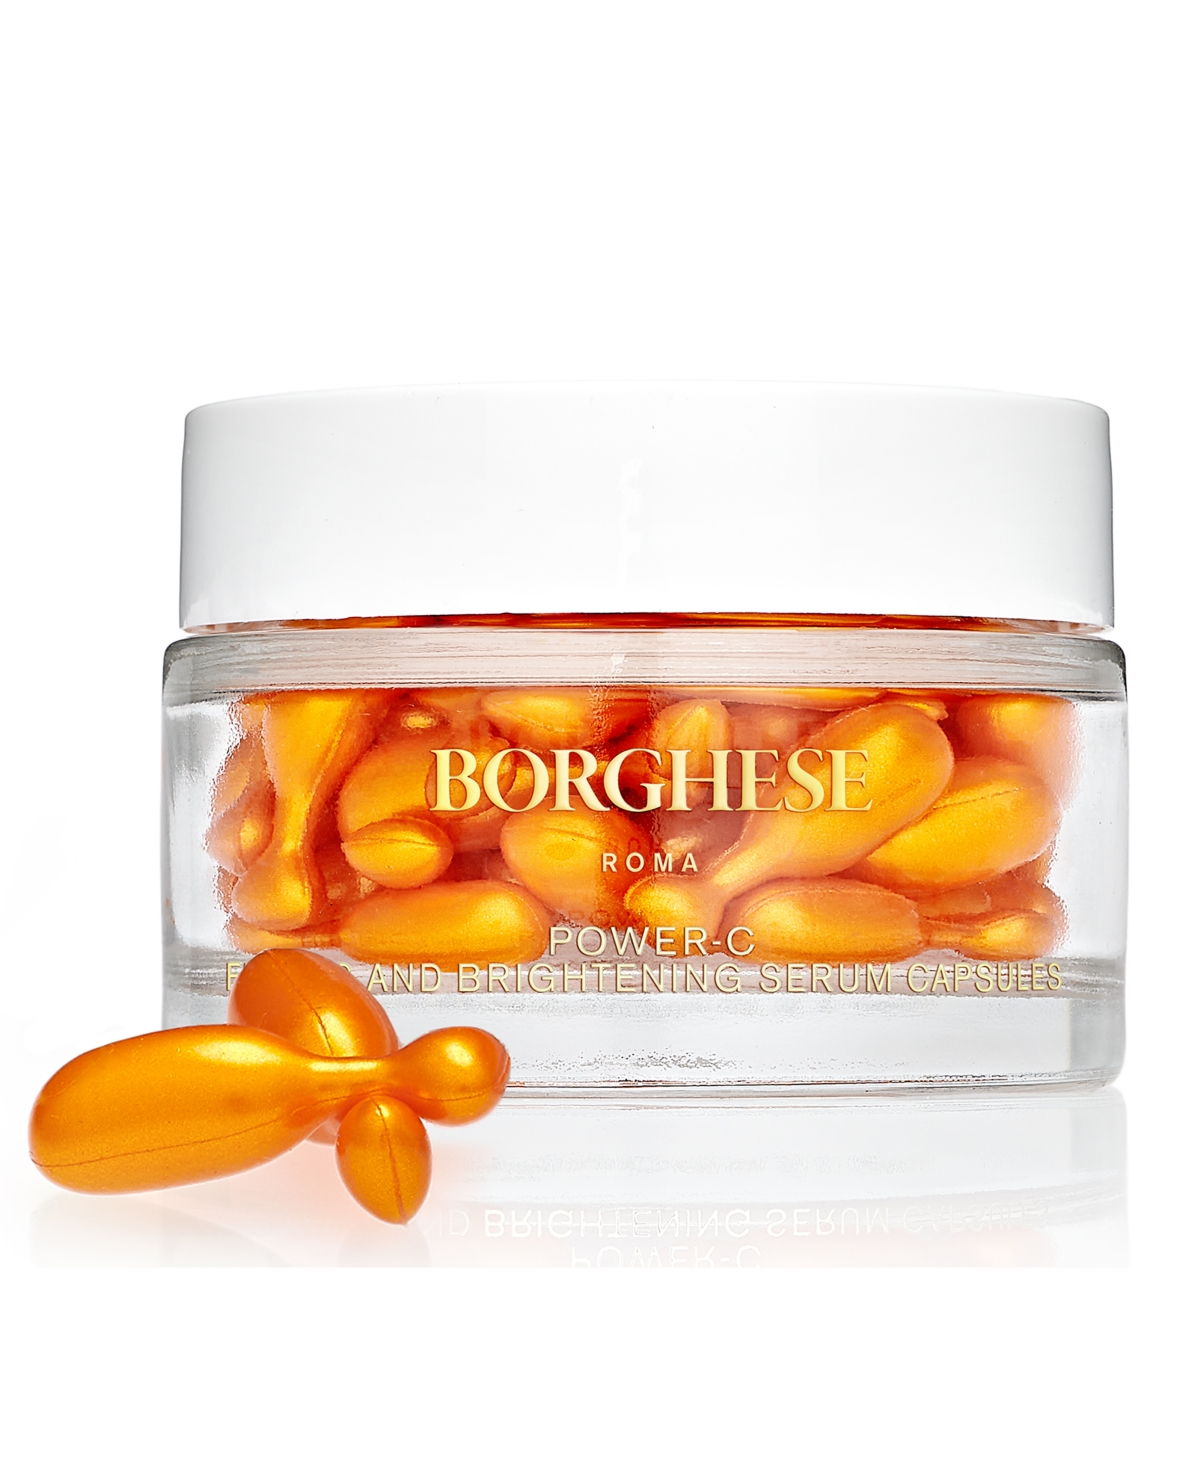 Borghese Power-c Firming & Brightening Serum Capsules, 50 pc.